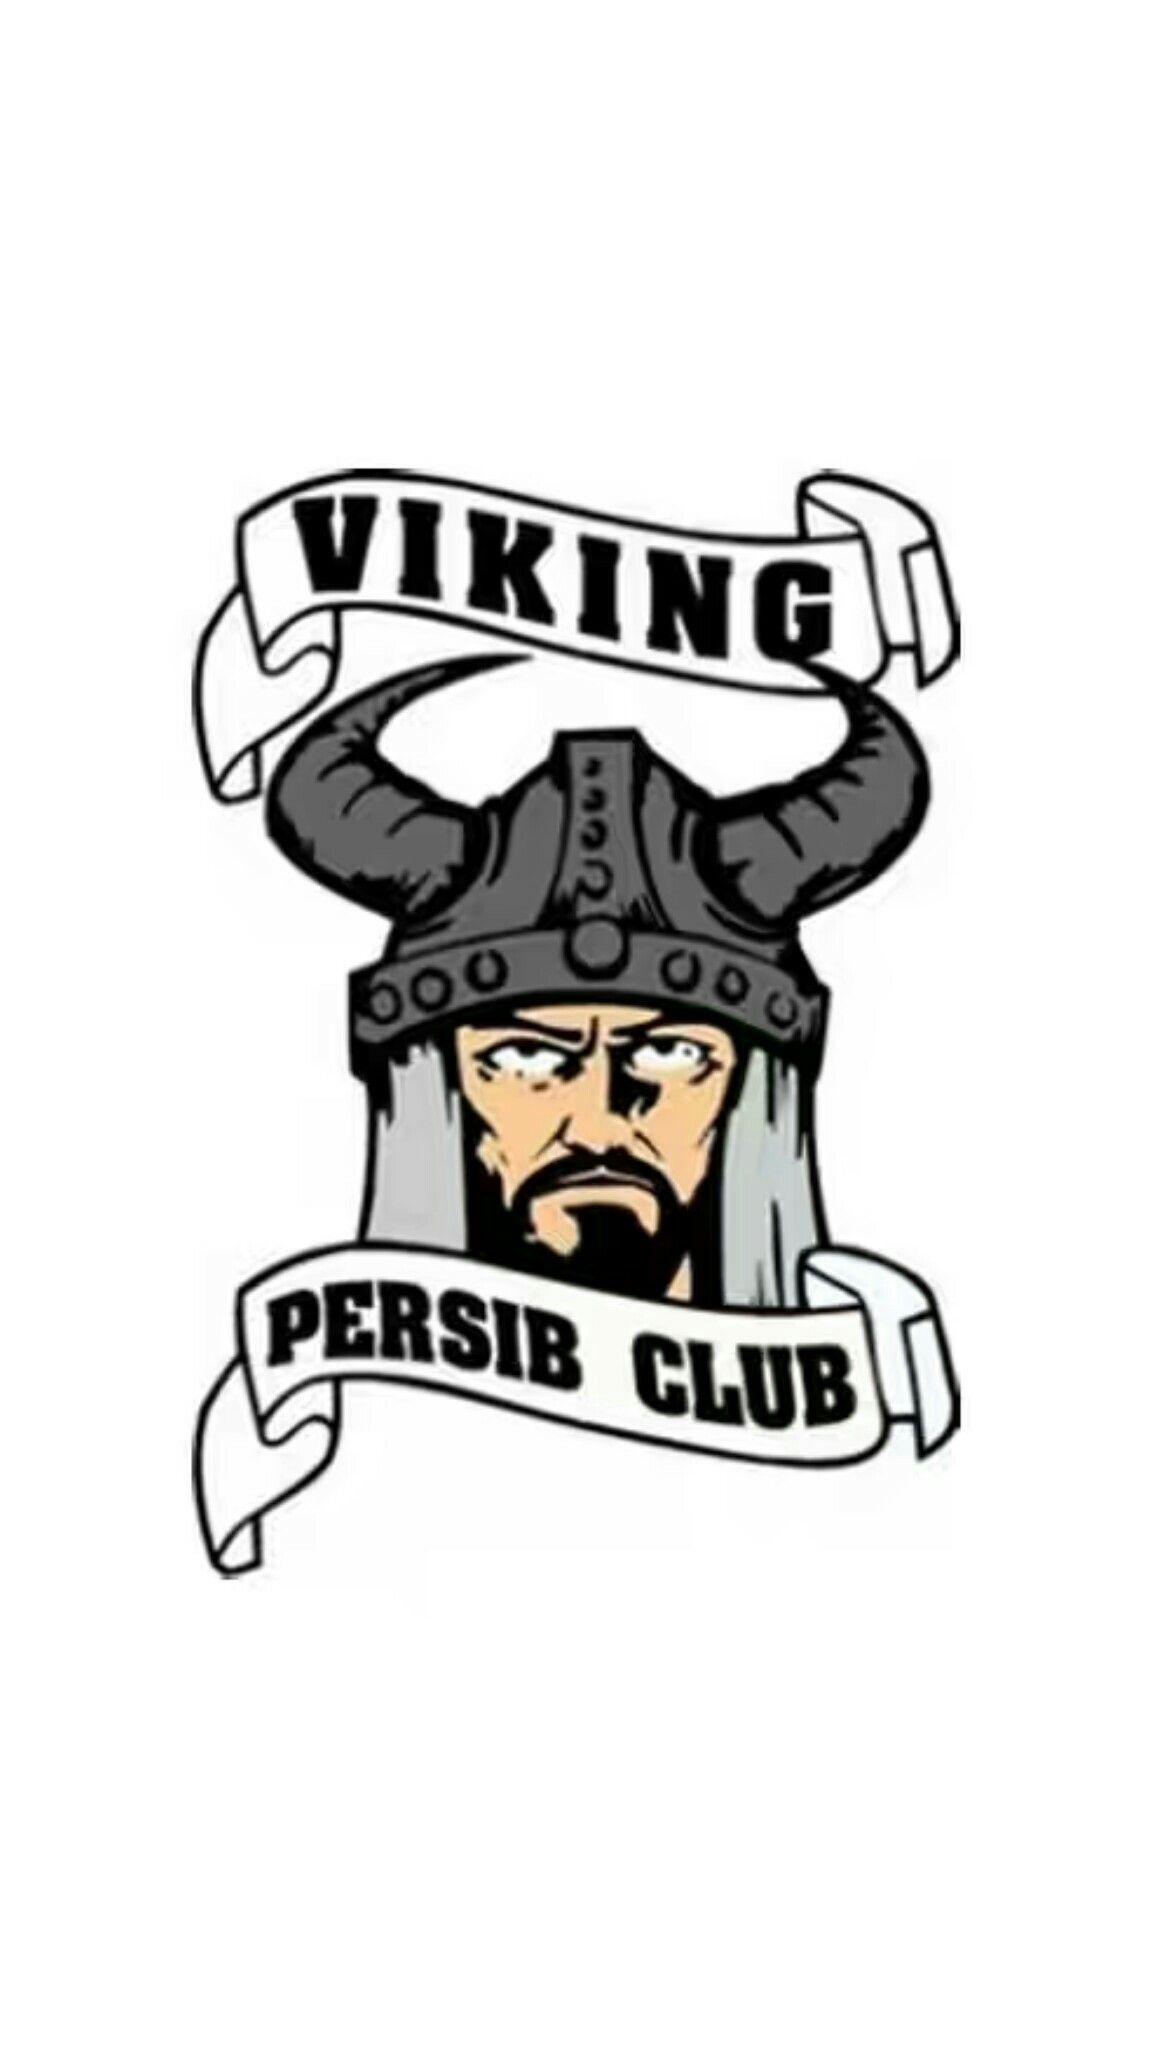 Viking Persib Club - HD Wallpaper 